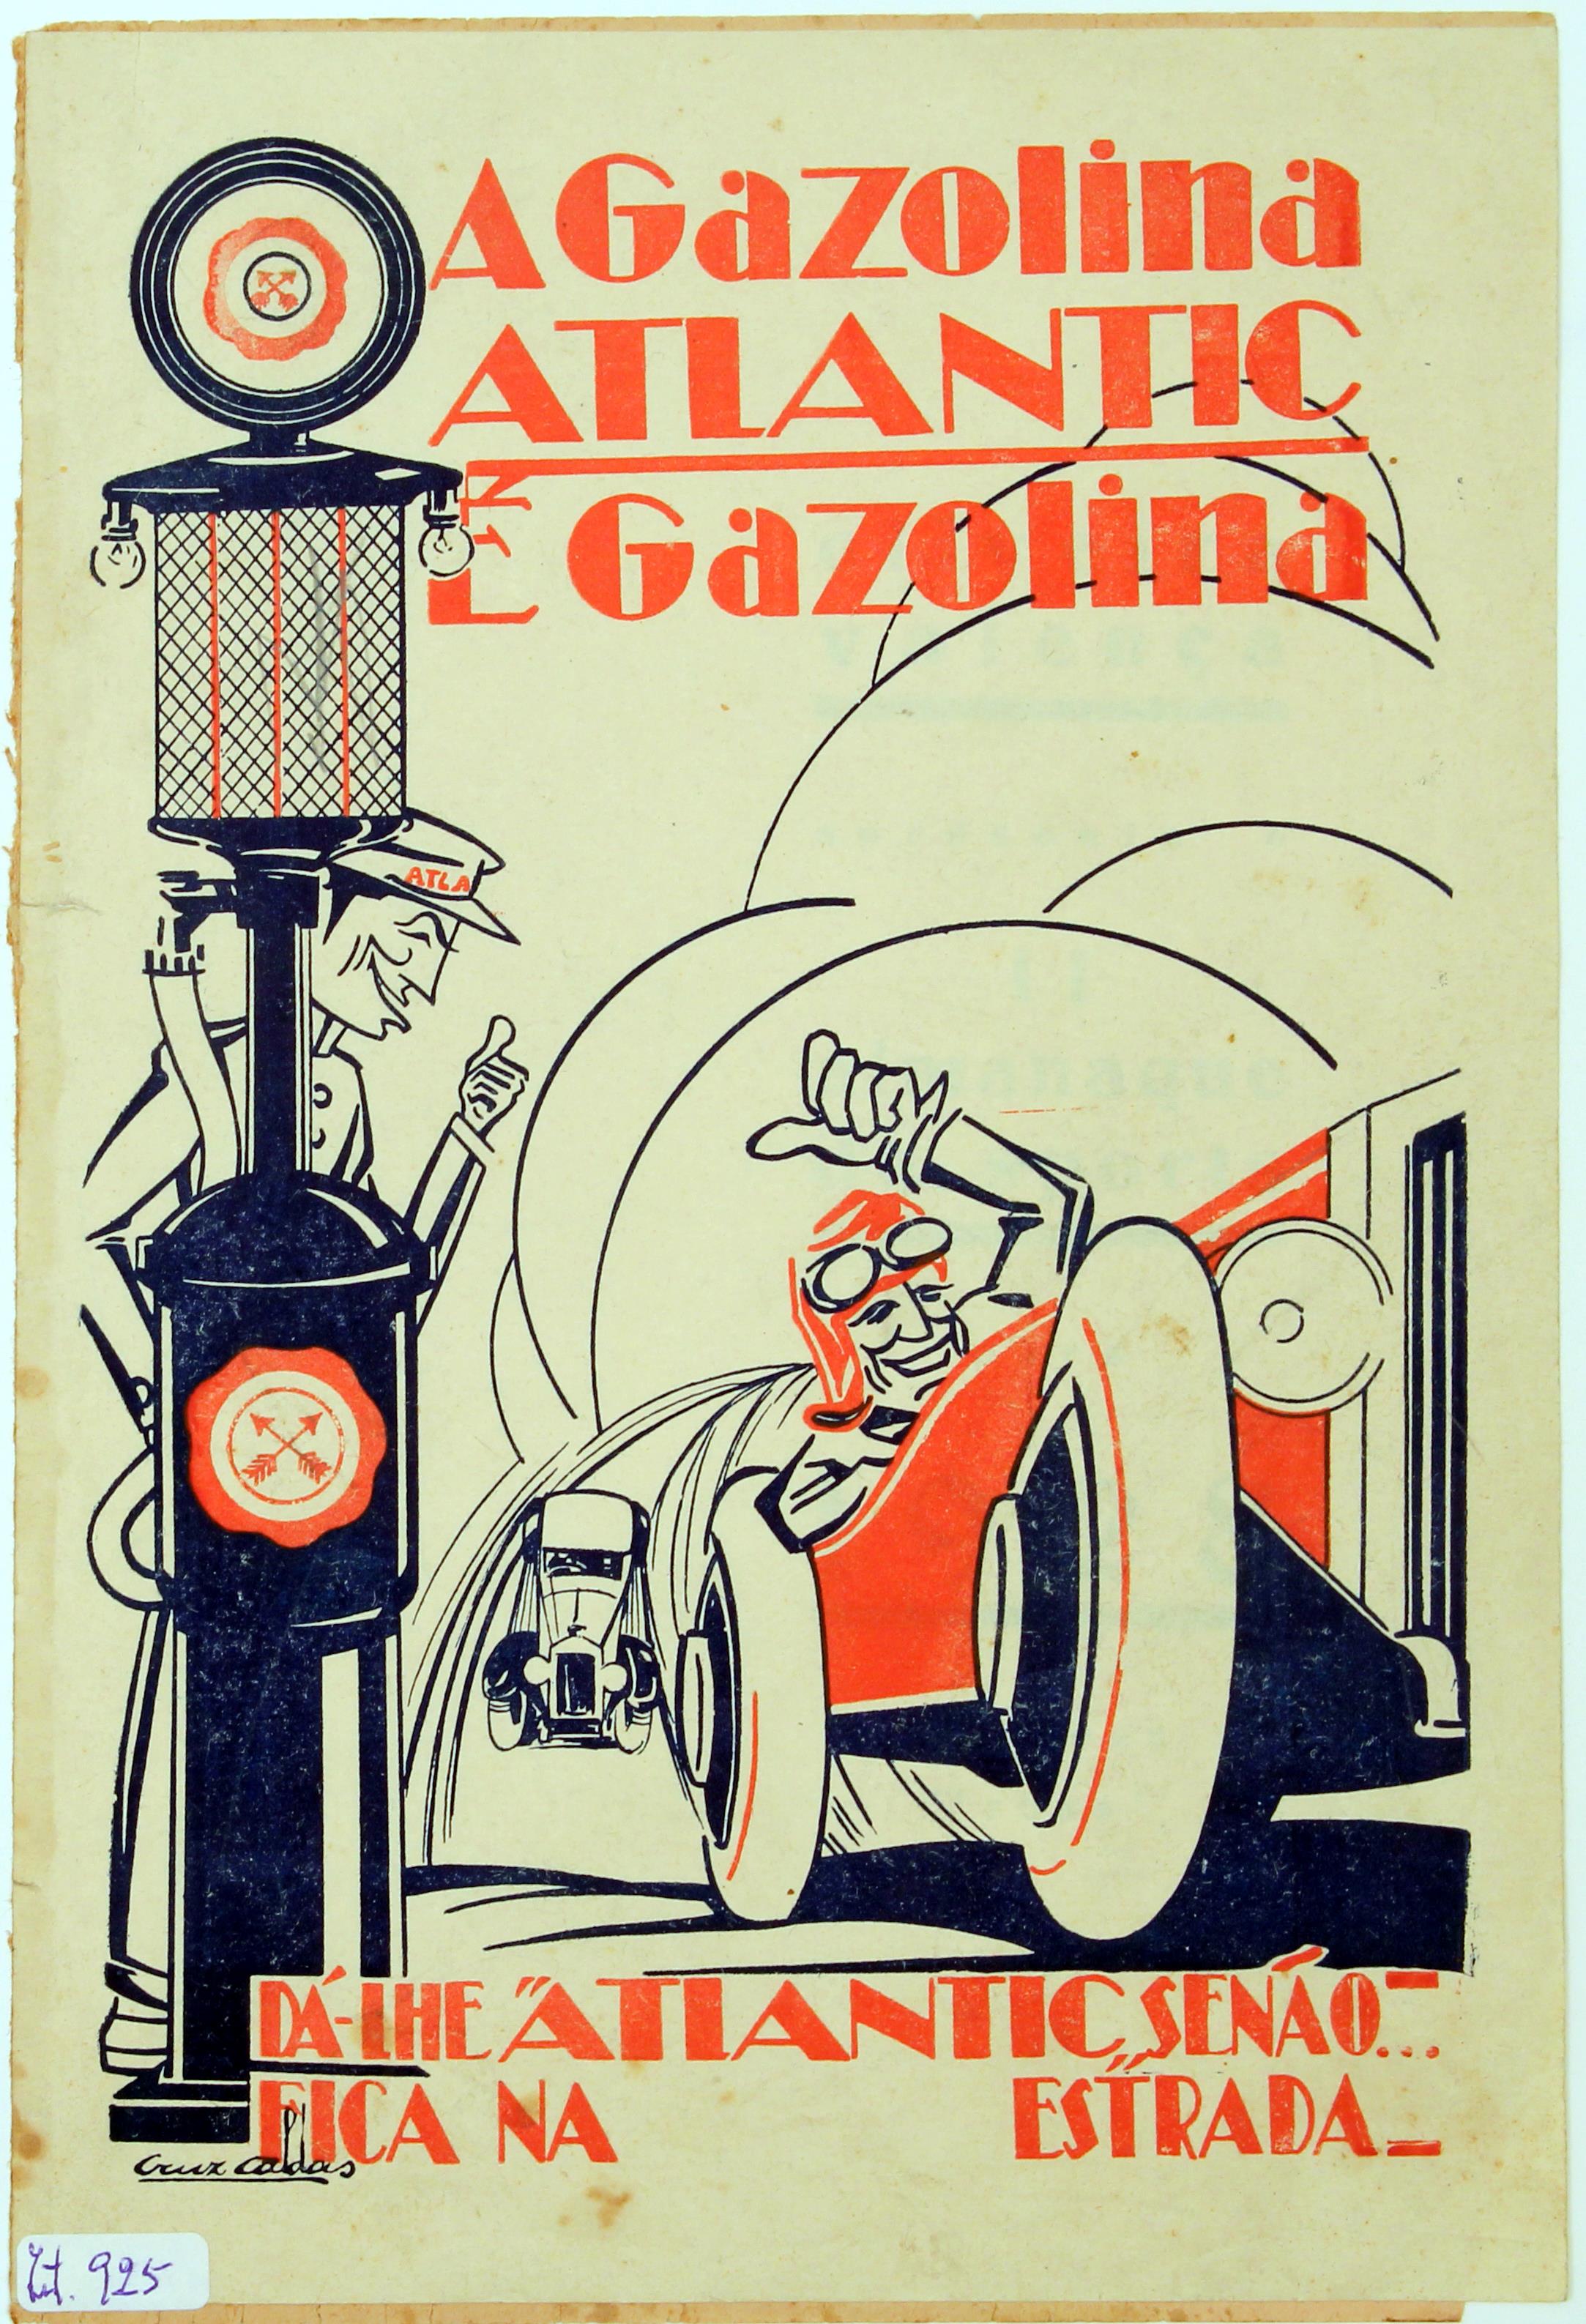 A Gazolina Atlantic é a gazolina : dá-lhe "Atlantic" senão Fica na estrada